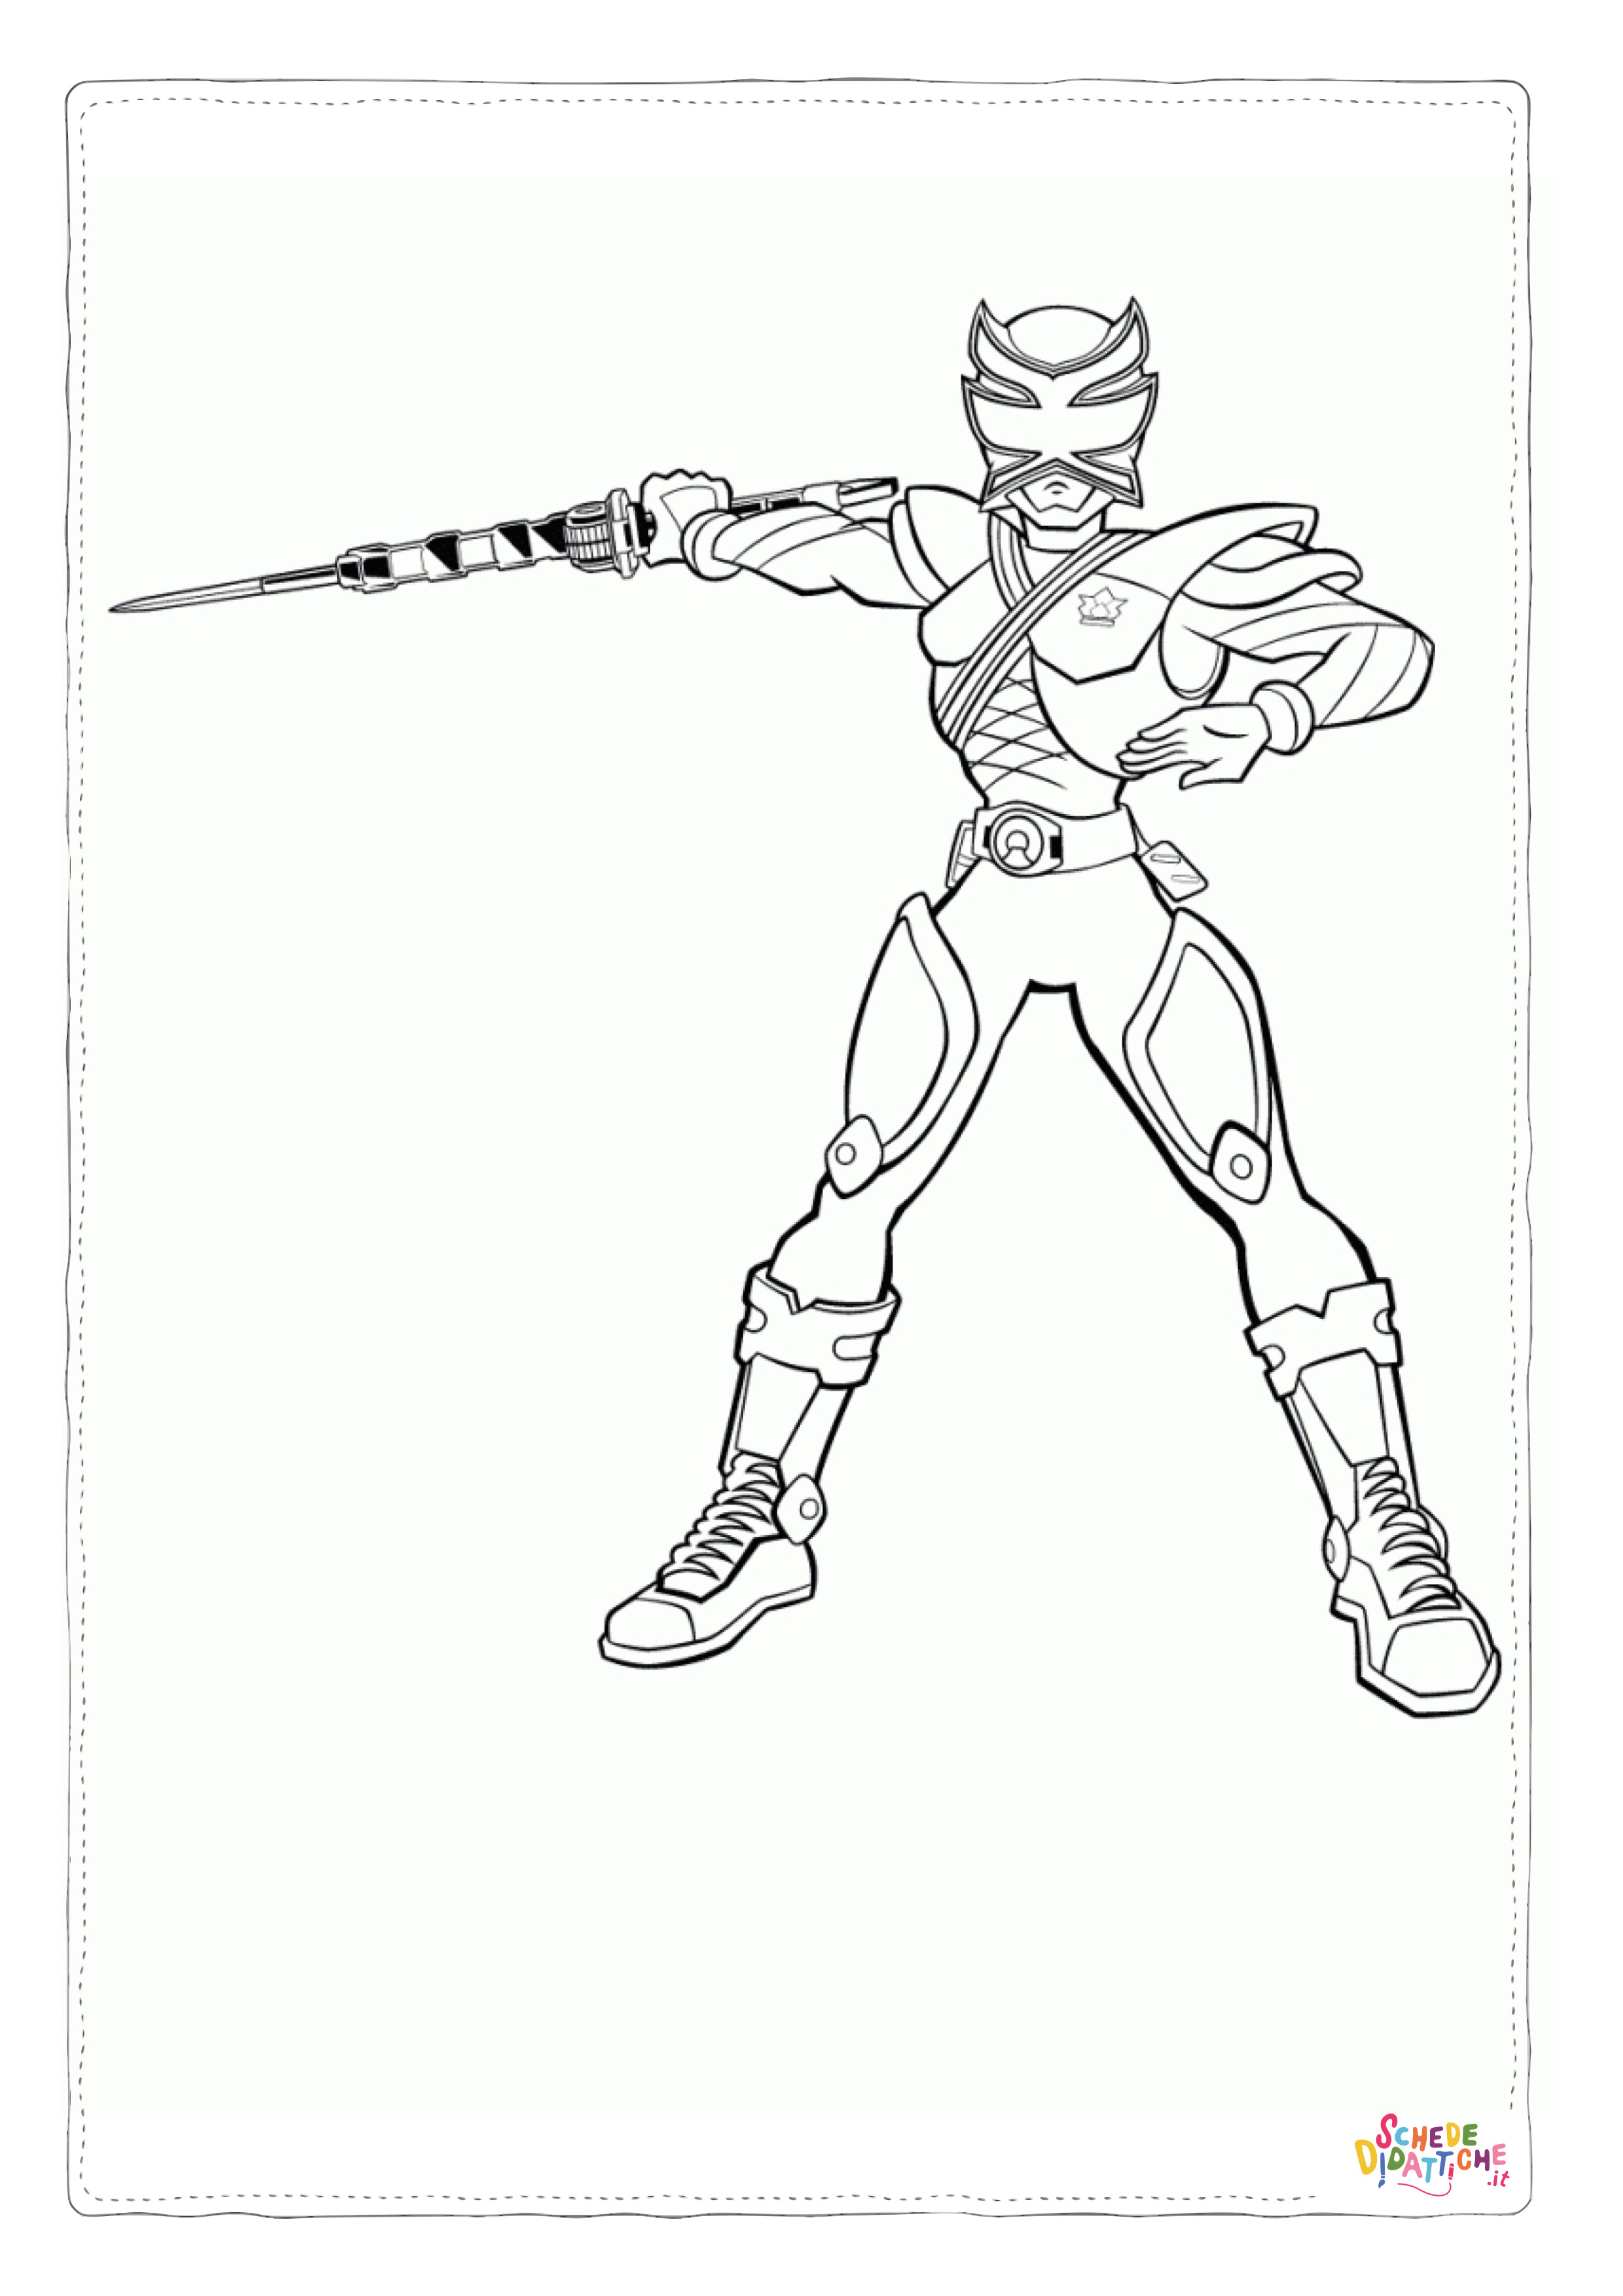 Disegno di Power Rangers da stampare e colorare 23